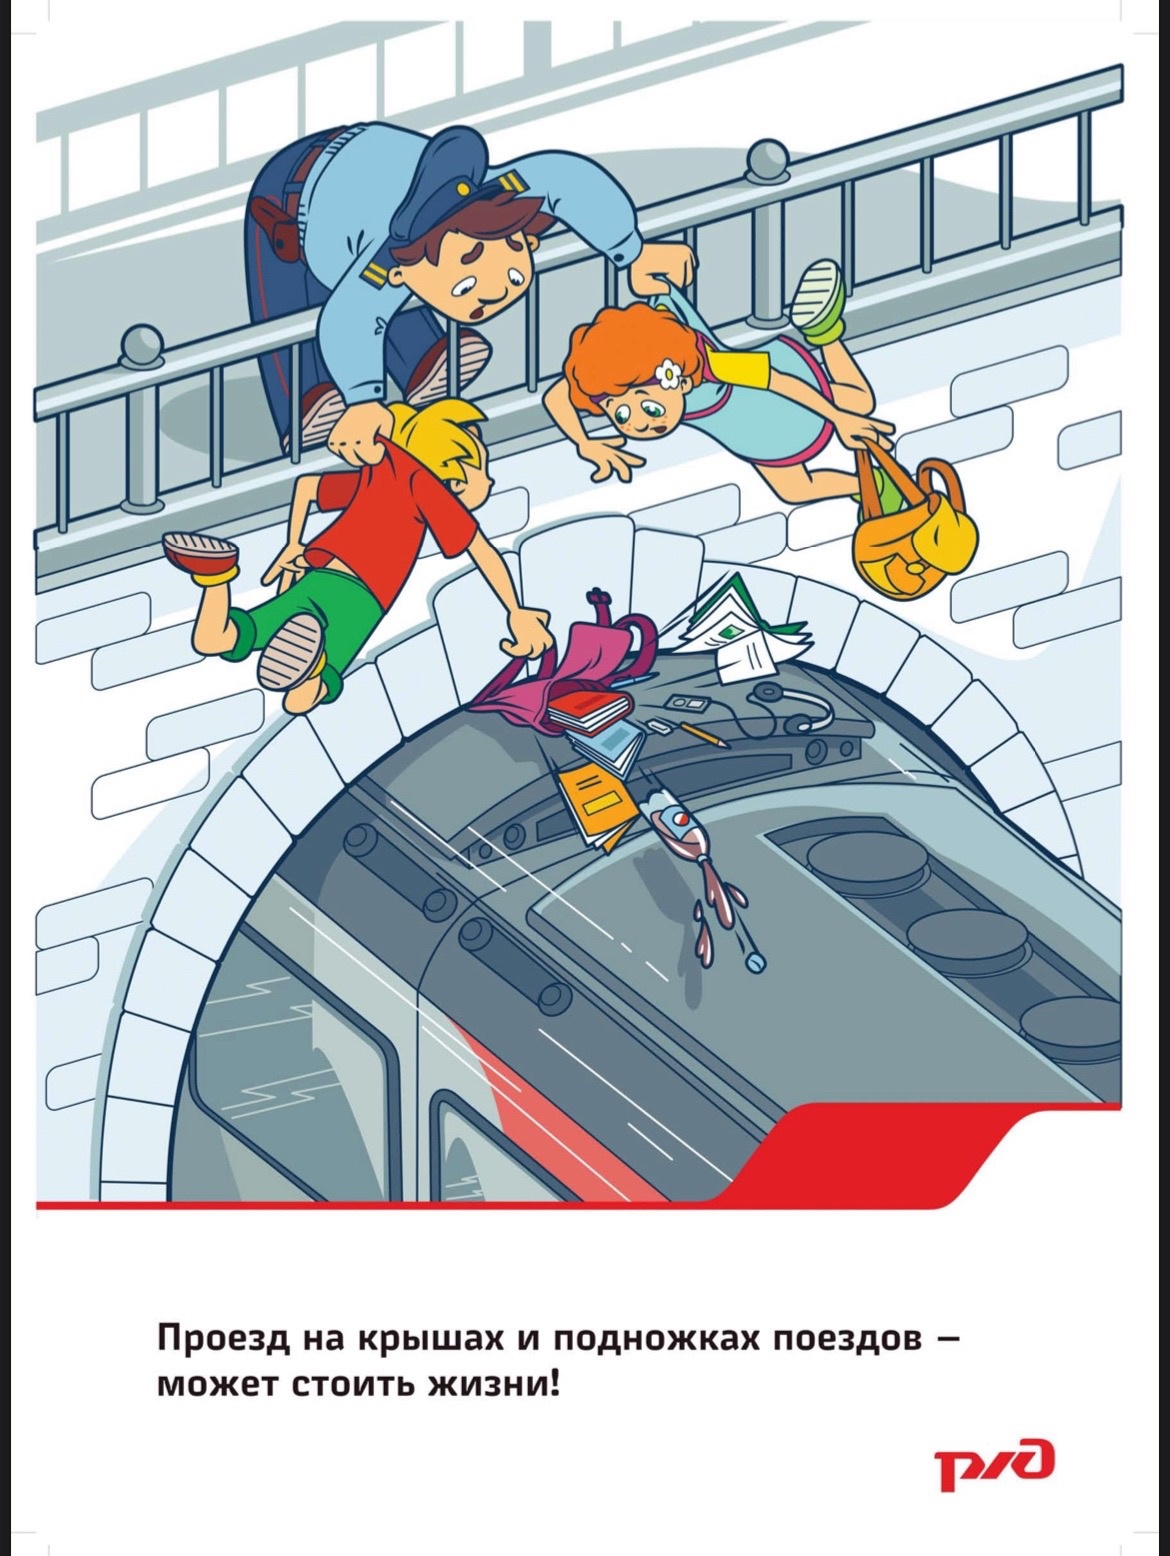 Правила безопасного поведения детей на железно-дорожном транспорте.